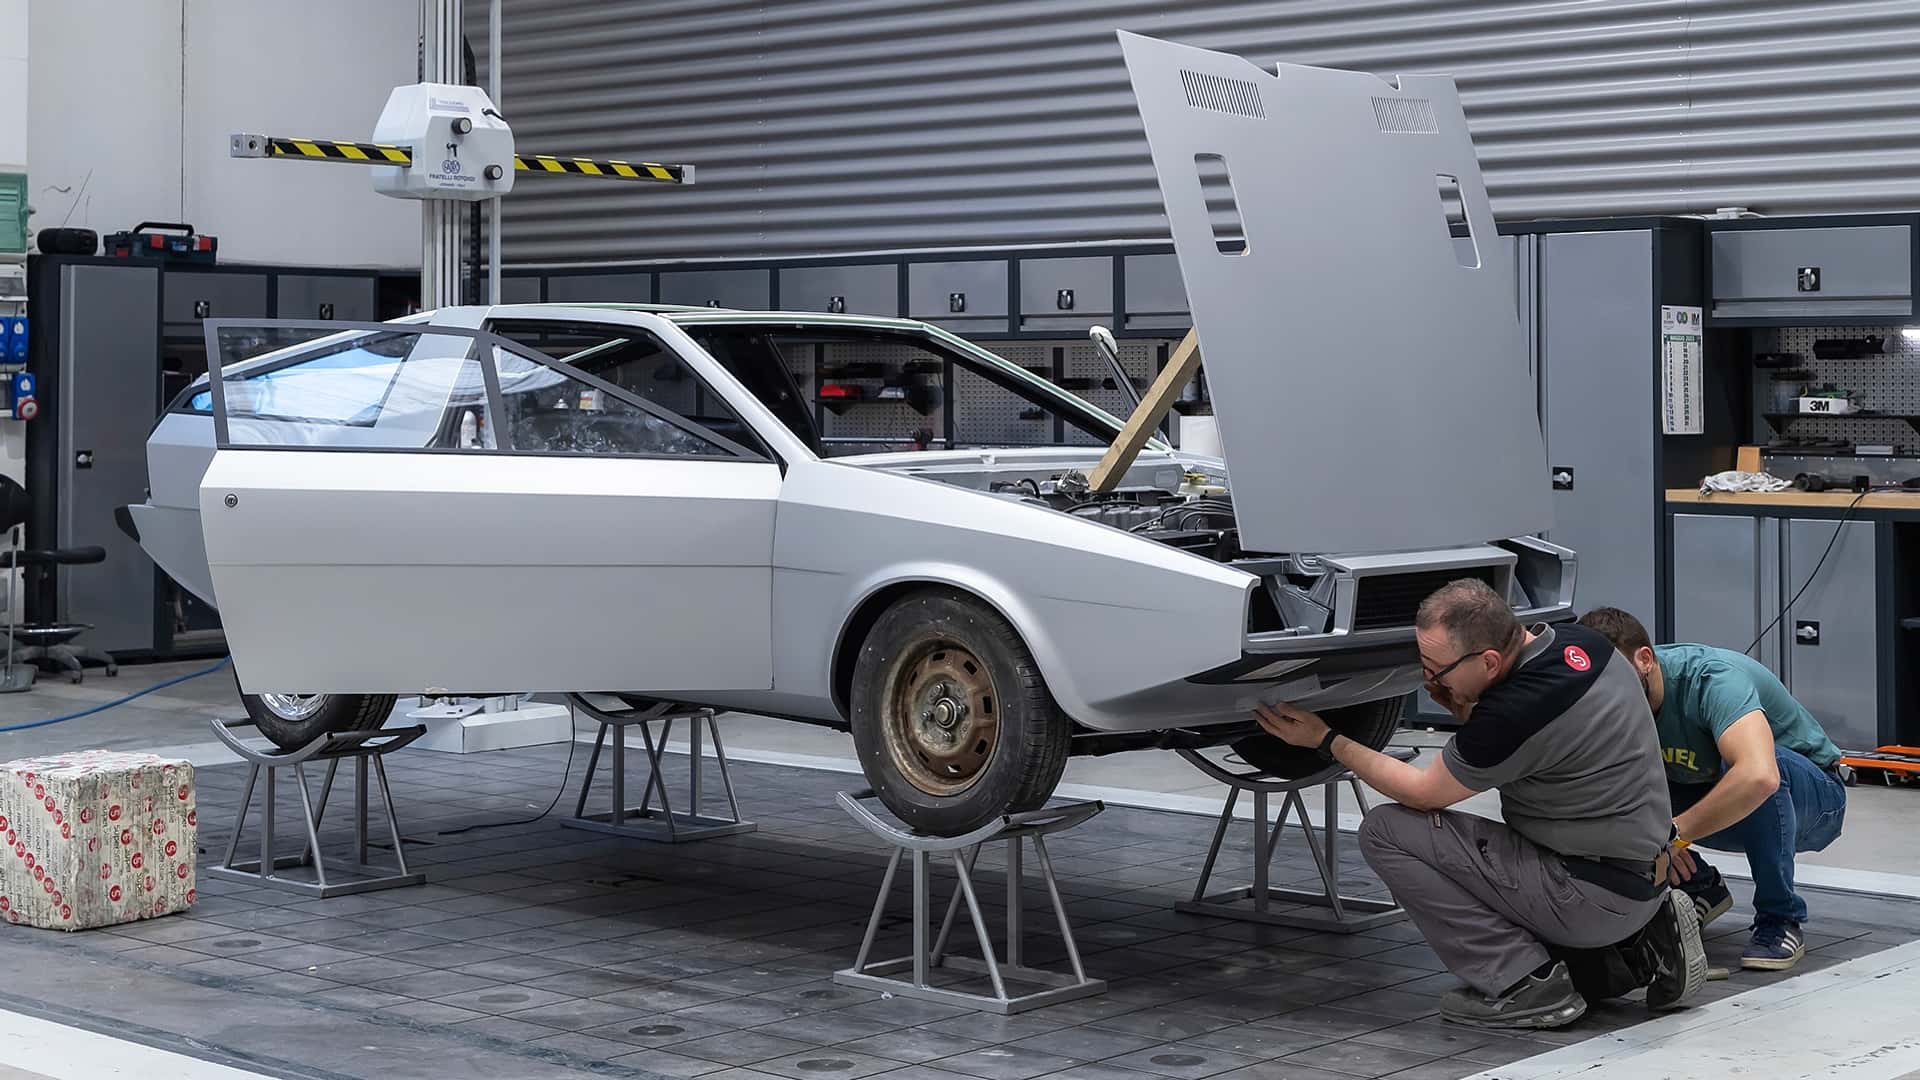 هيونداي تعيد إحياء سيارة بوني كوبيه الاختبارية الأيقونية في موديل عصري اختباري جديد 44